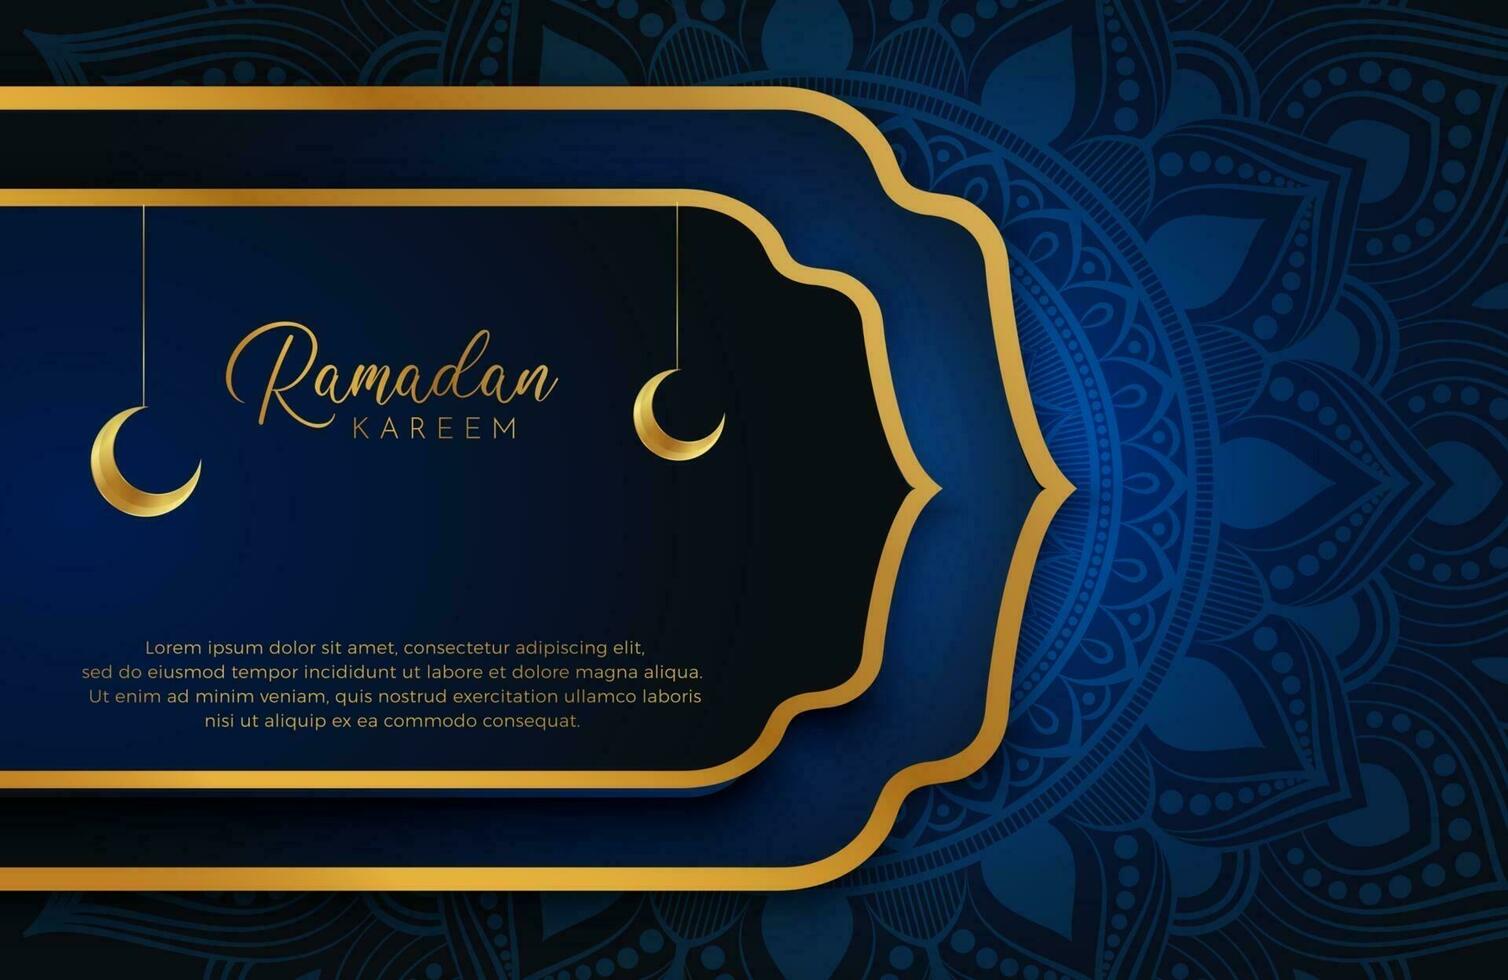 Ramadan Kareem fundo com ouro e azul ilustração vetorial de estilo de luxo para as celebrações do mês sagrado islâmico decorado com lua e arabescos de mandala vetor